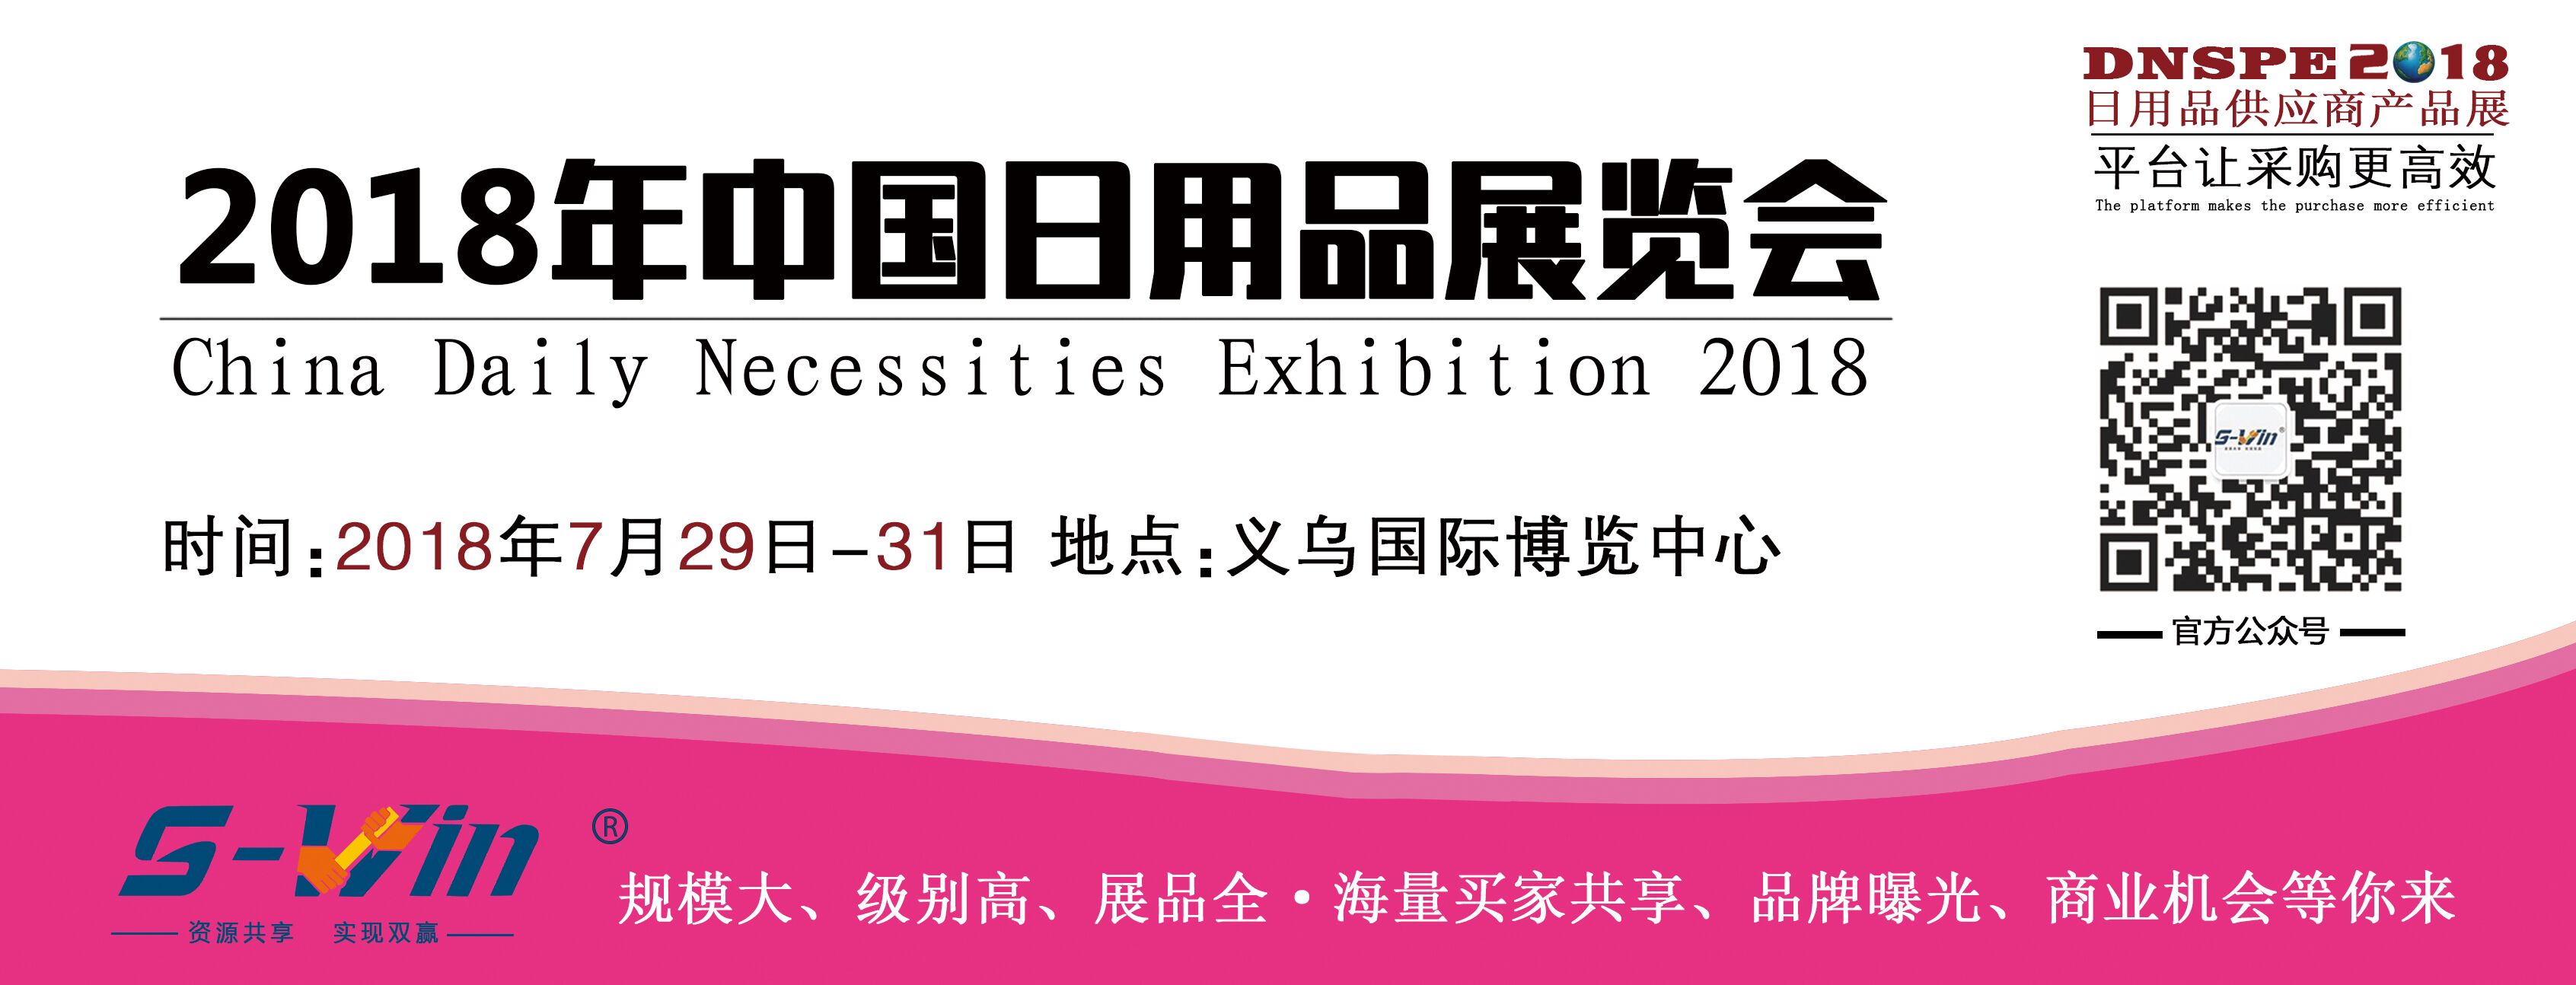 2018年中国日用品展览会